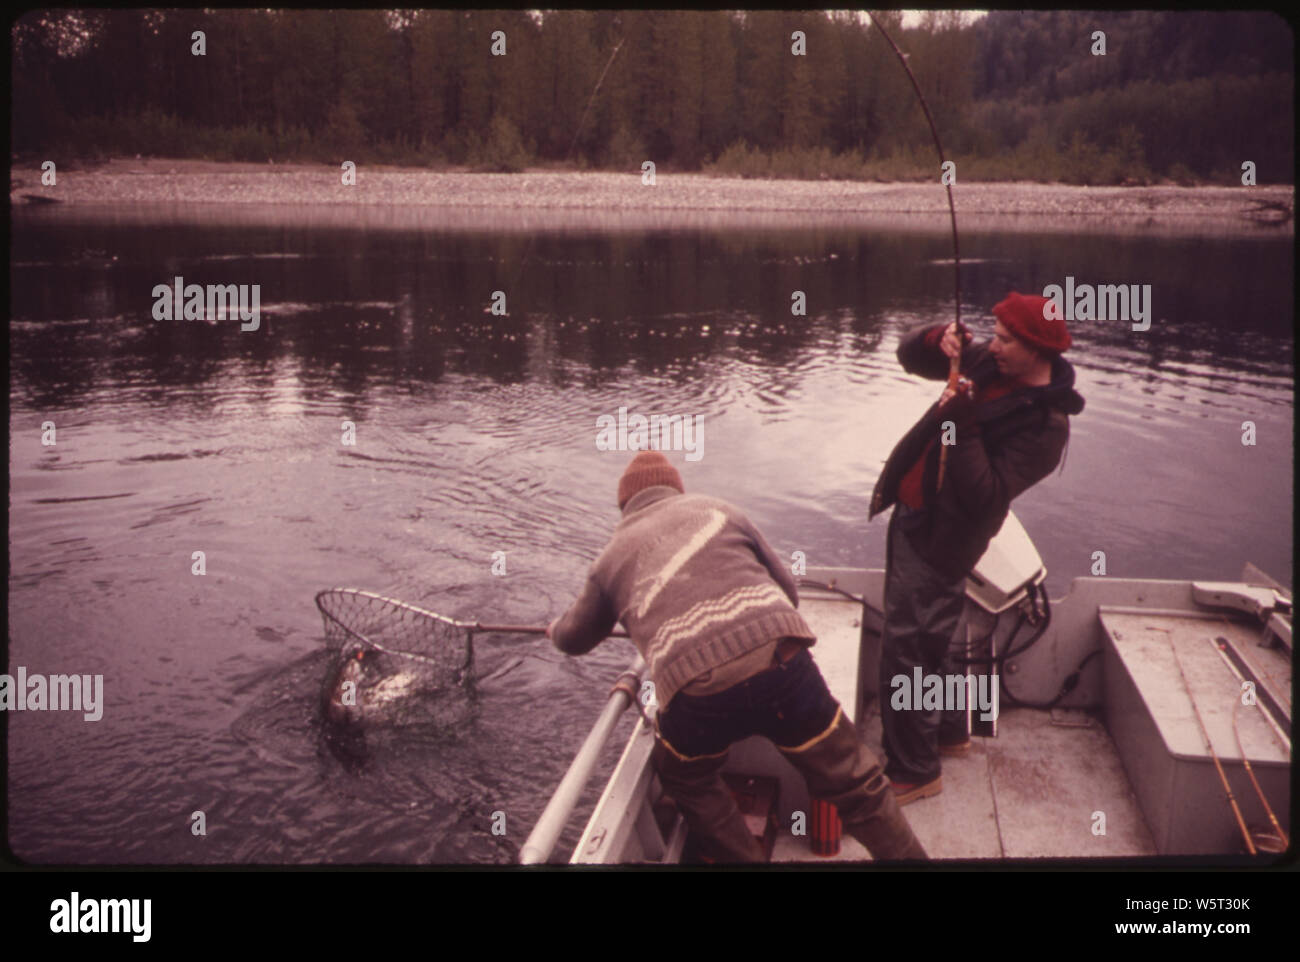 Sur la rivière Skagit PRÈS DE BÉTON, DAN DUDLEY DE BELLEVUE JOUE UN 19 ! La TRUITE À TÊTE D'ACIER LIVRE COMME GUIDE KERRY DUVALL GÈRE LE NET. Le Skagit est l'une des plus belles rivières à truites arc-en-ciel dans l'Etat et attire des milliers de pêcheurs sportifs CHAQUE ANNÉE Banque D'Images